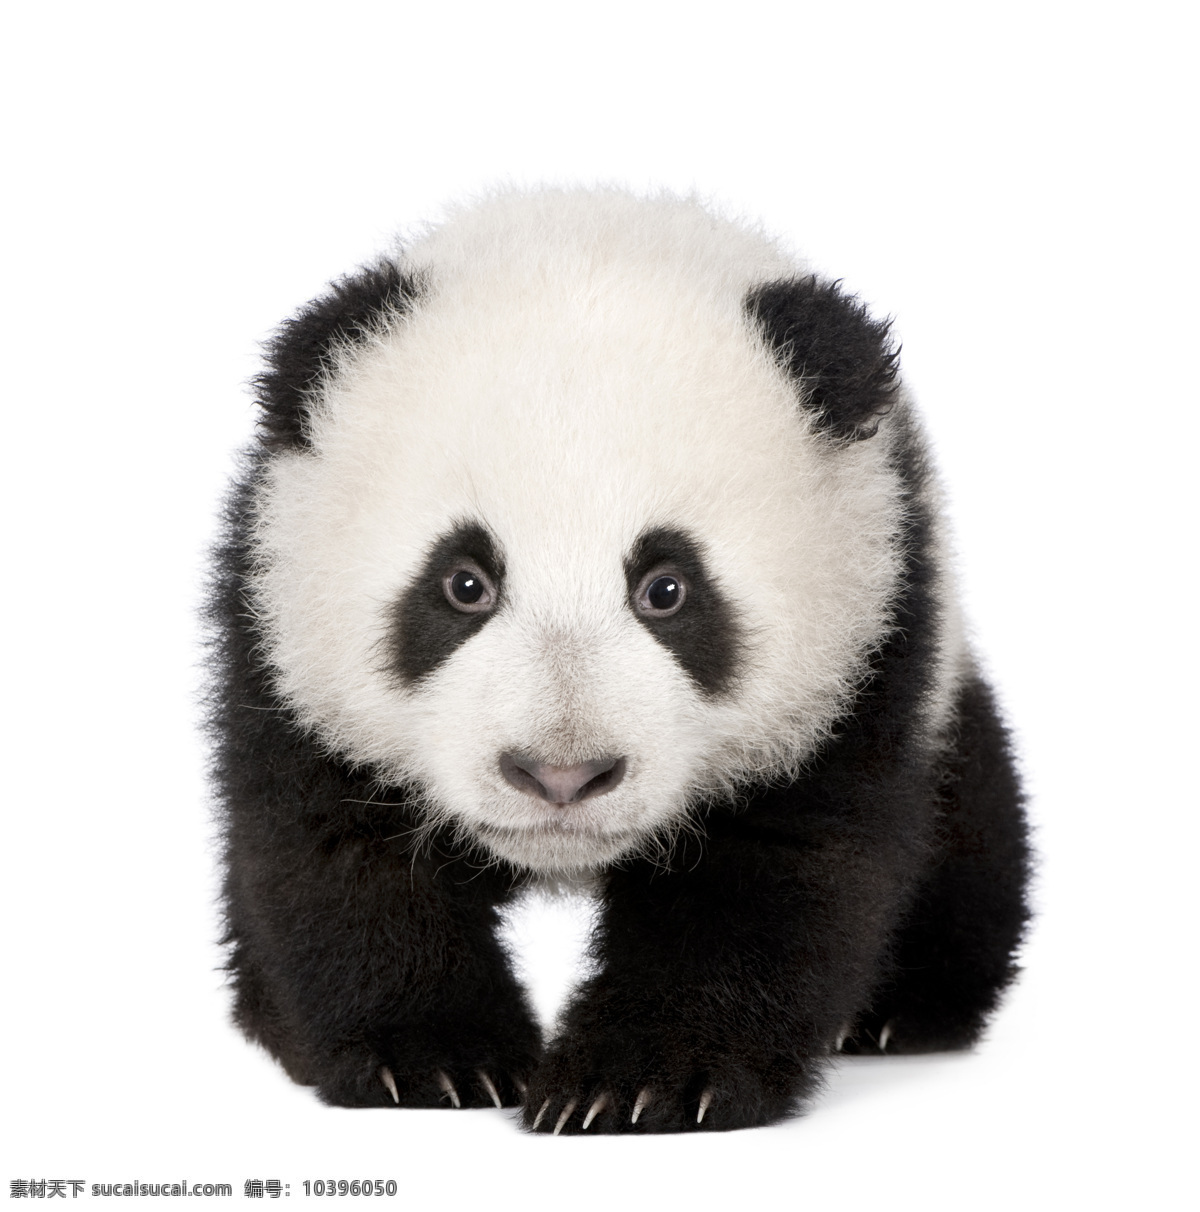 可爱 大熊猫 动物世界 国宝 珍惜动物 野生动物 动物摄影 陆地动物 生物世界